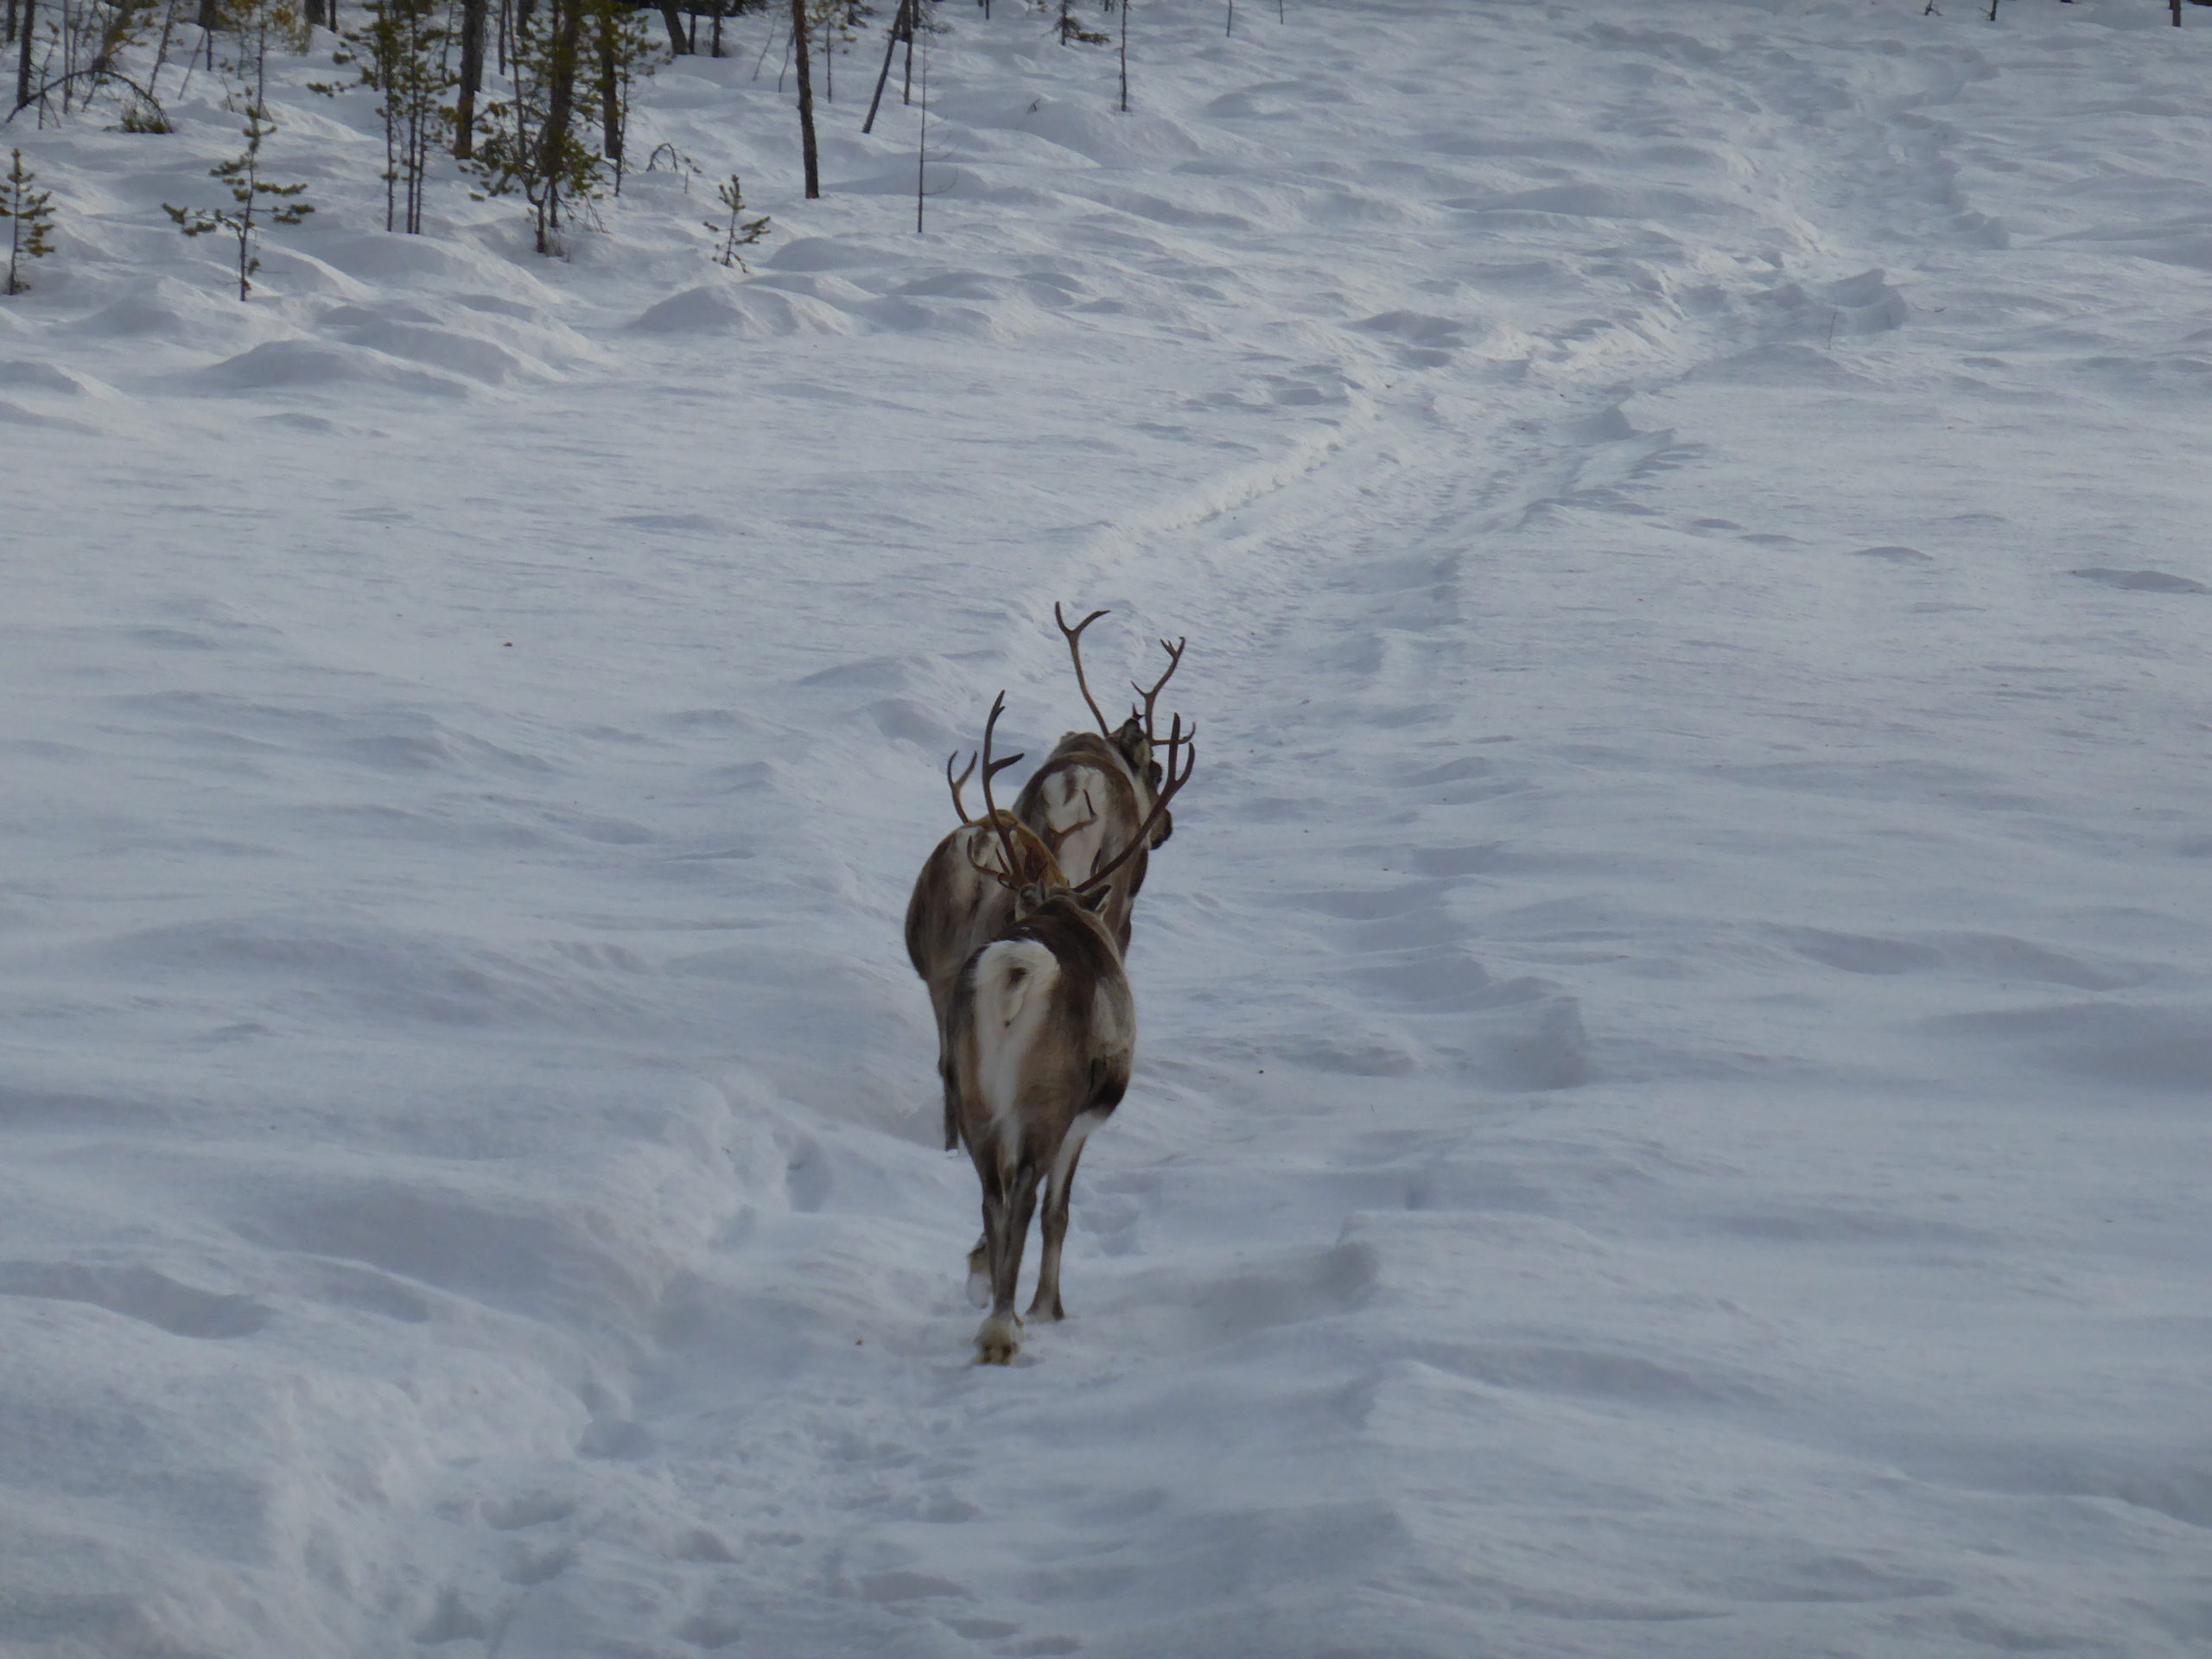 Reindeer in Lapland Sweden